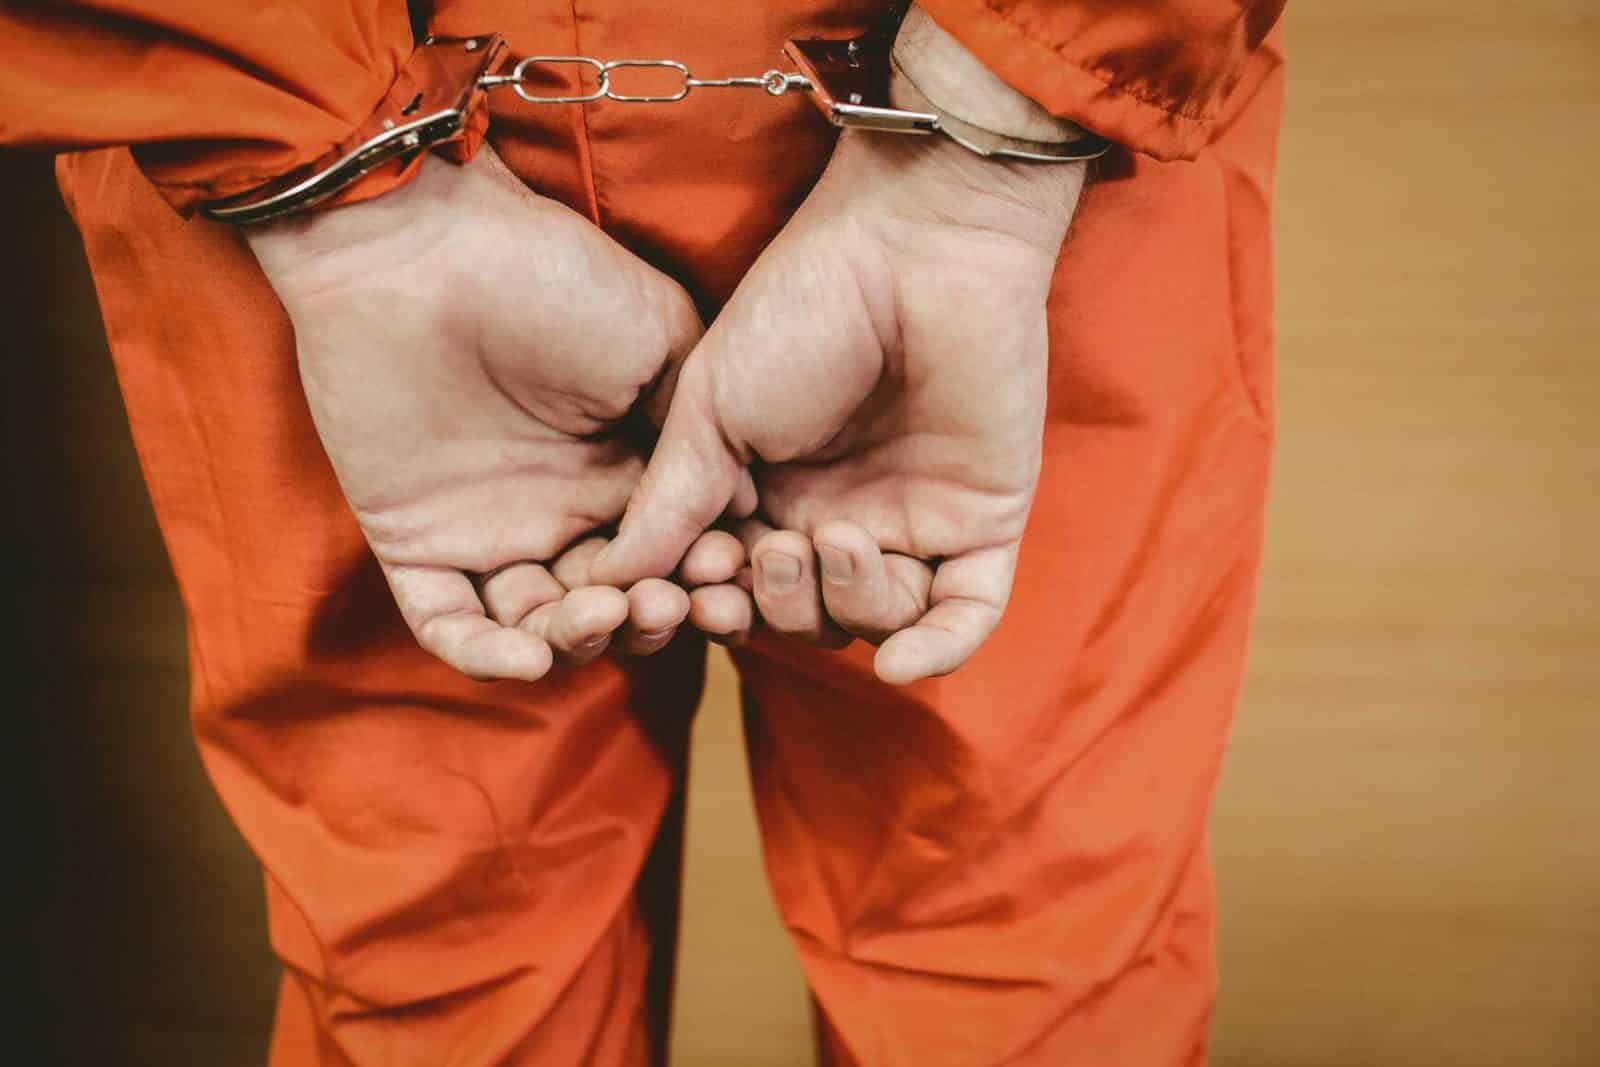 Arrested in cuffs